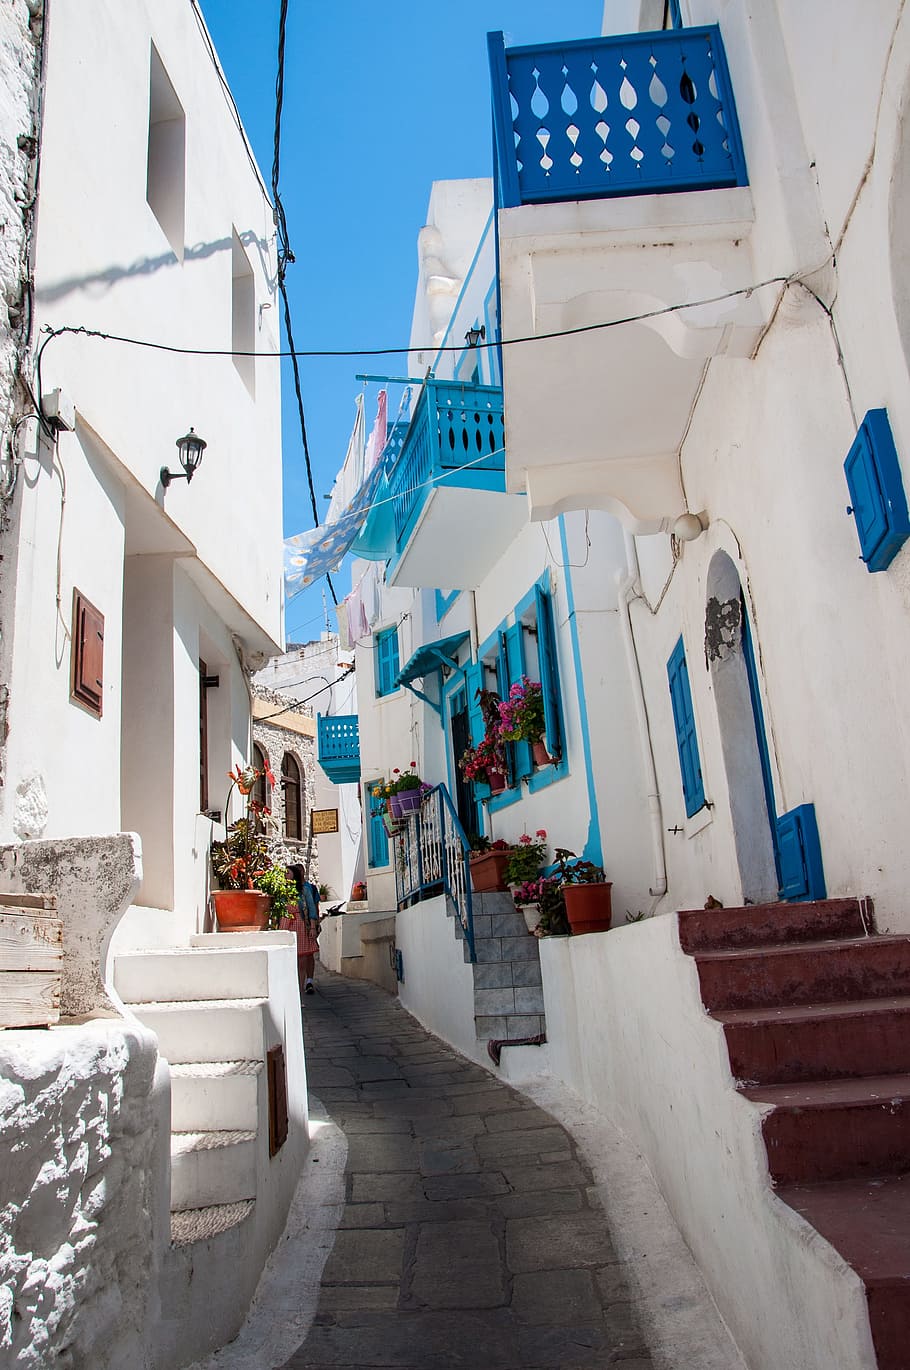 Hari Libur, Yunani, Laut Aegean, Putih, biru, yunani tradisional, rumah-rumah putih, arsitektur, rumah, pariwisata